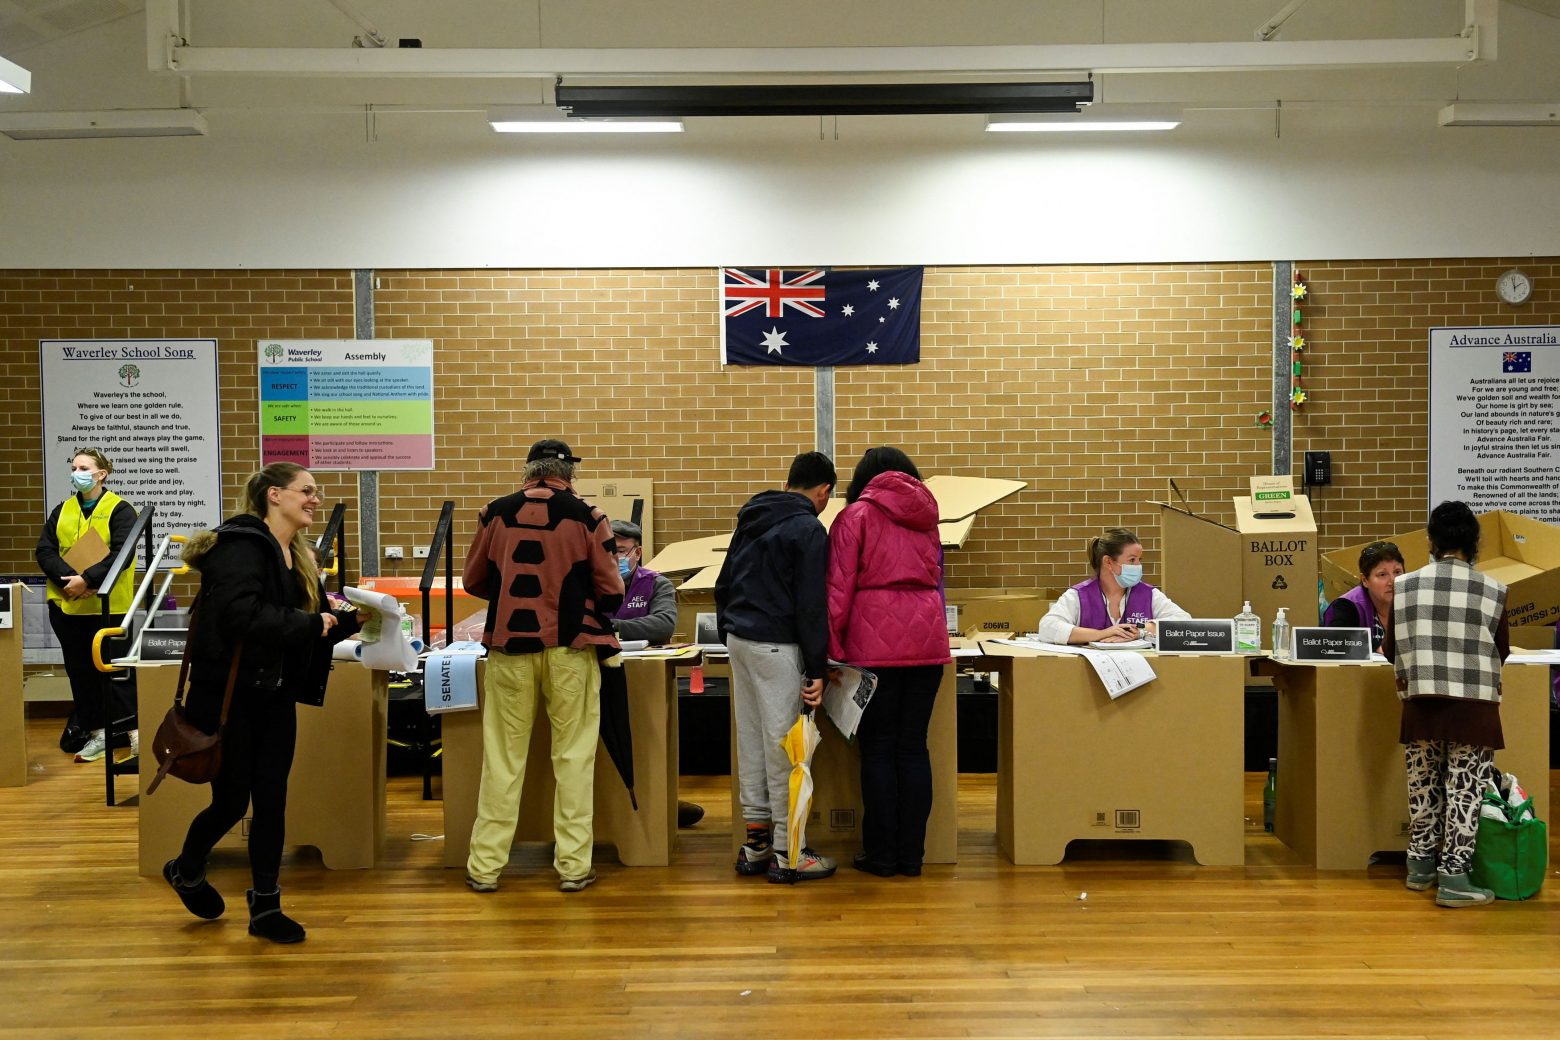 Αυστραλία: Ήττα για τους Συντηρητικούς στις εκλογές - Στοίχημα για τους Εργατικούς να σχηματίσουν κυβέρνηση